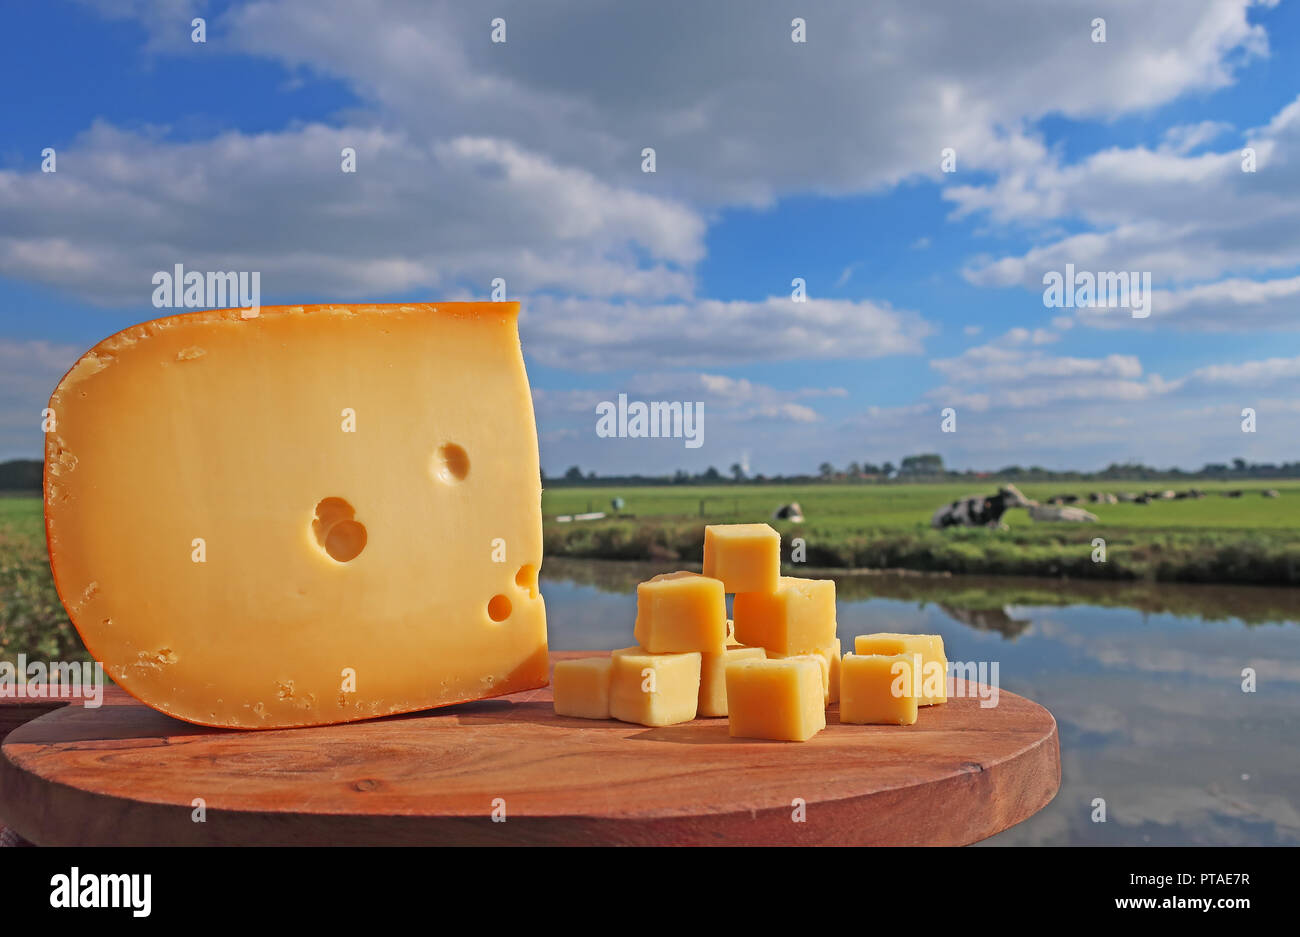 Formaggio olandese sul piatto di legno con le mucche sullo sfondo Foto Stock